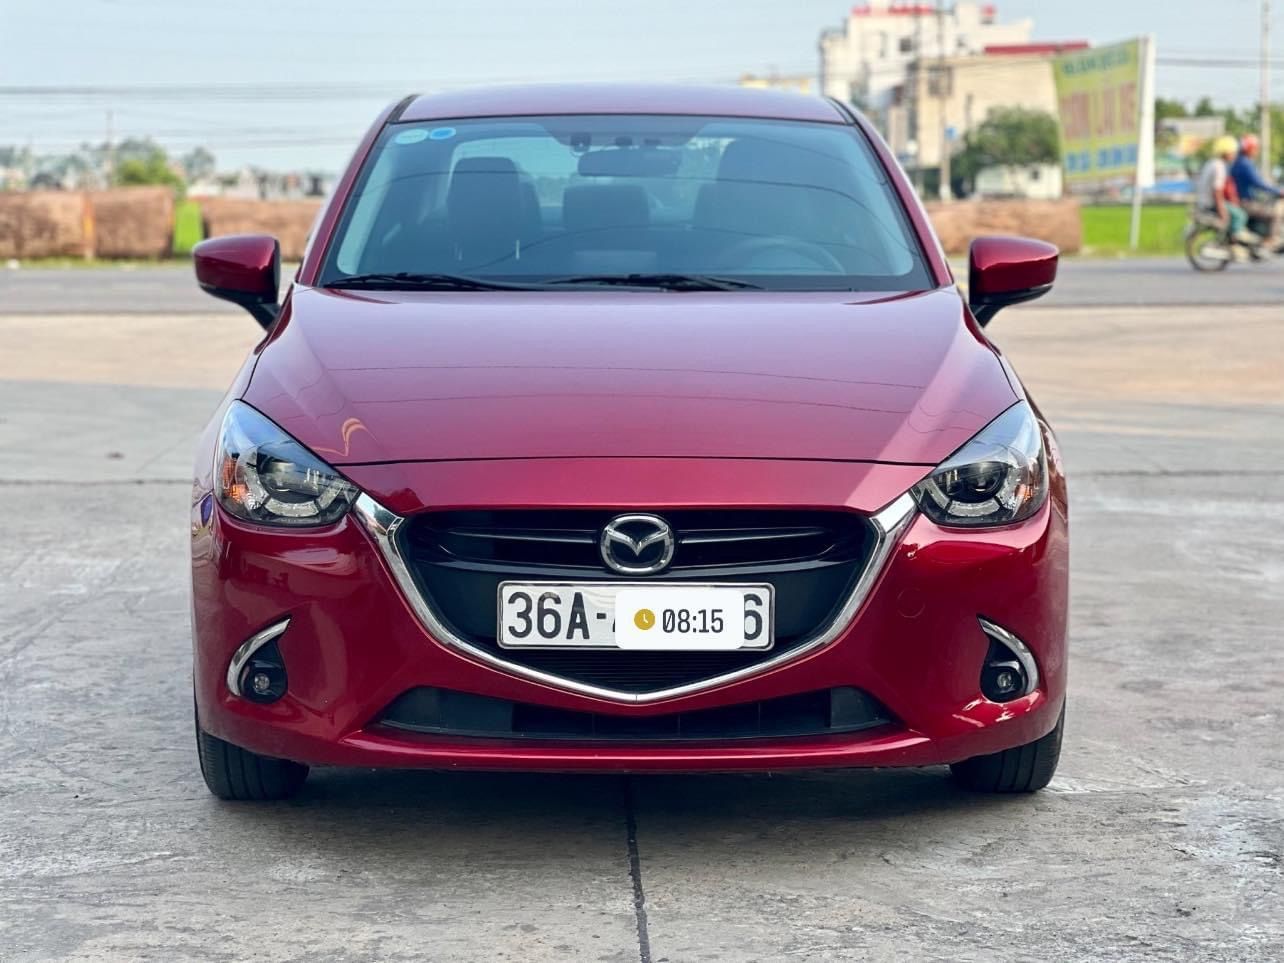 Mazda 2 2019 - Bán xe giá chỉ 490 triệu